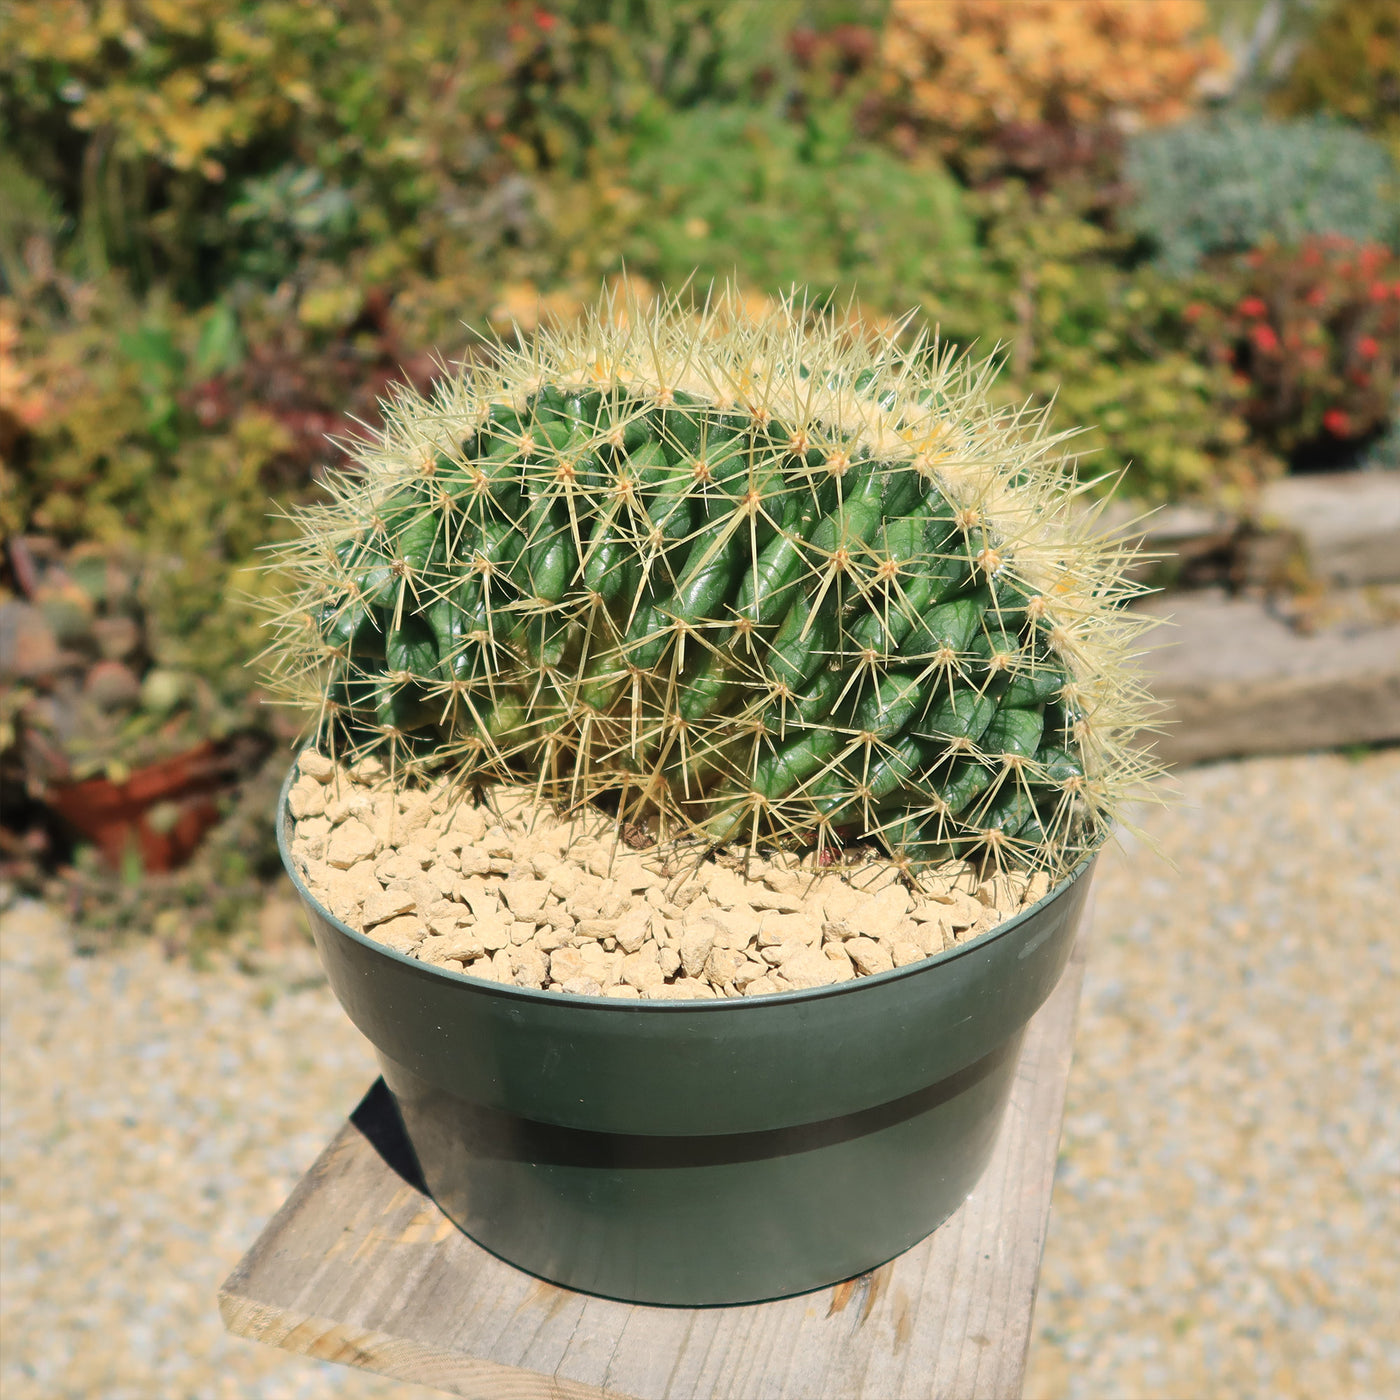 Crested Golden Barrel Cactus – Echinocactus grusonii cristatus